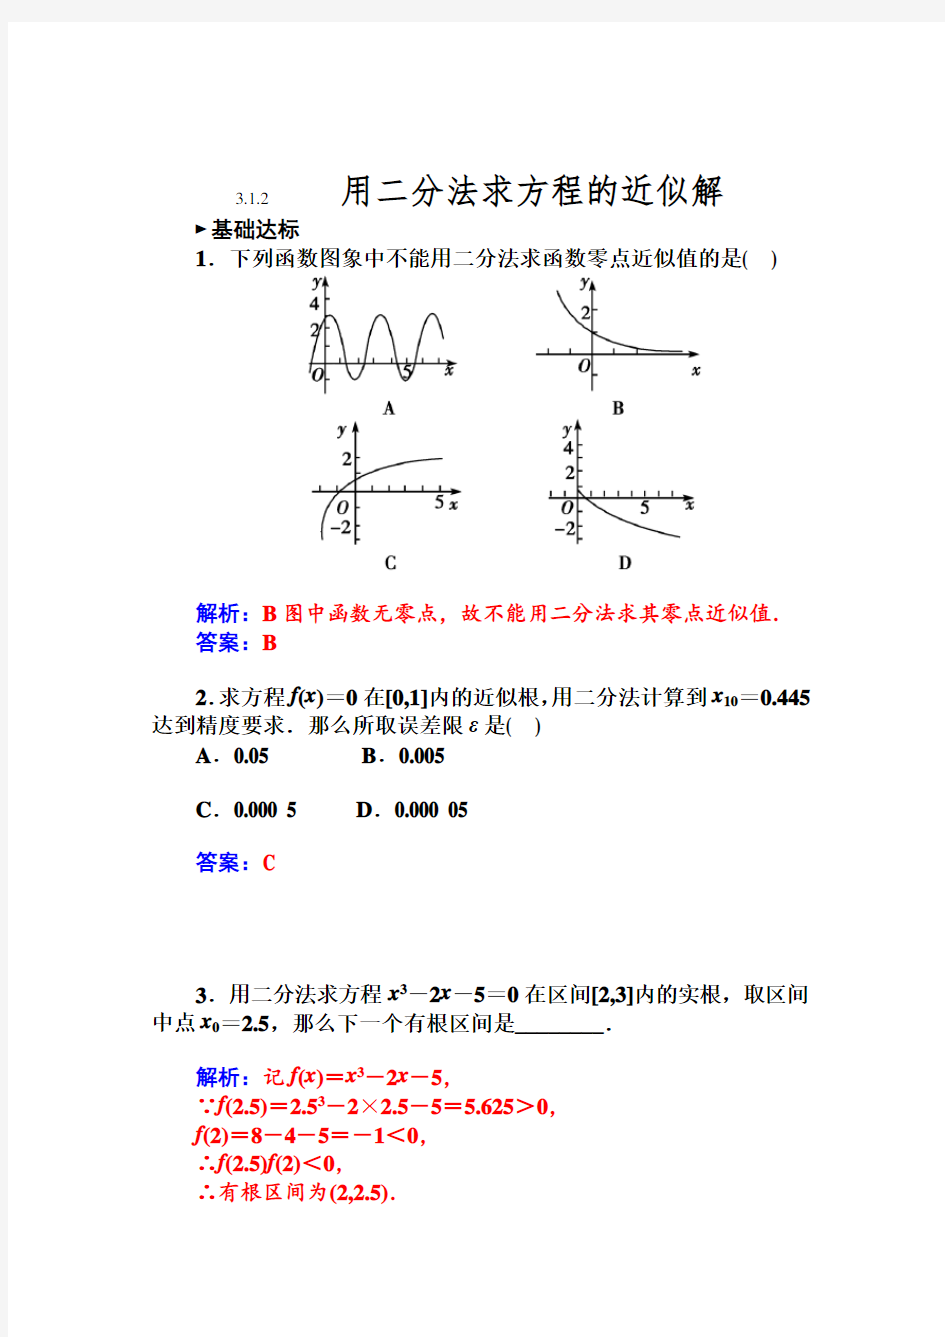 用二分法求方程的近似解 (2)